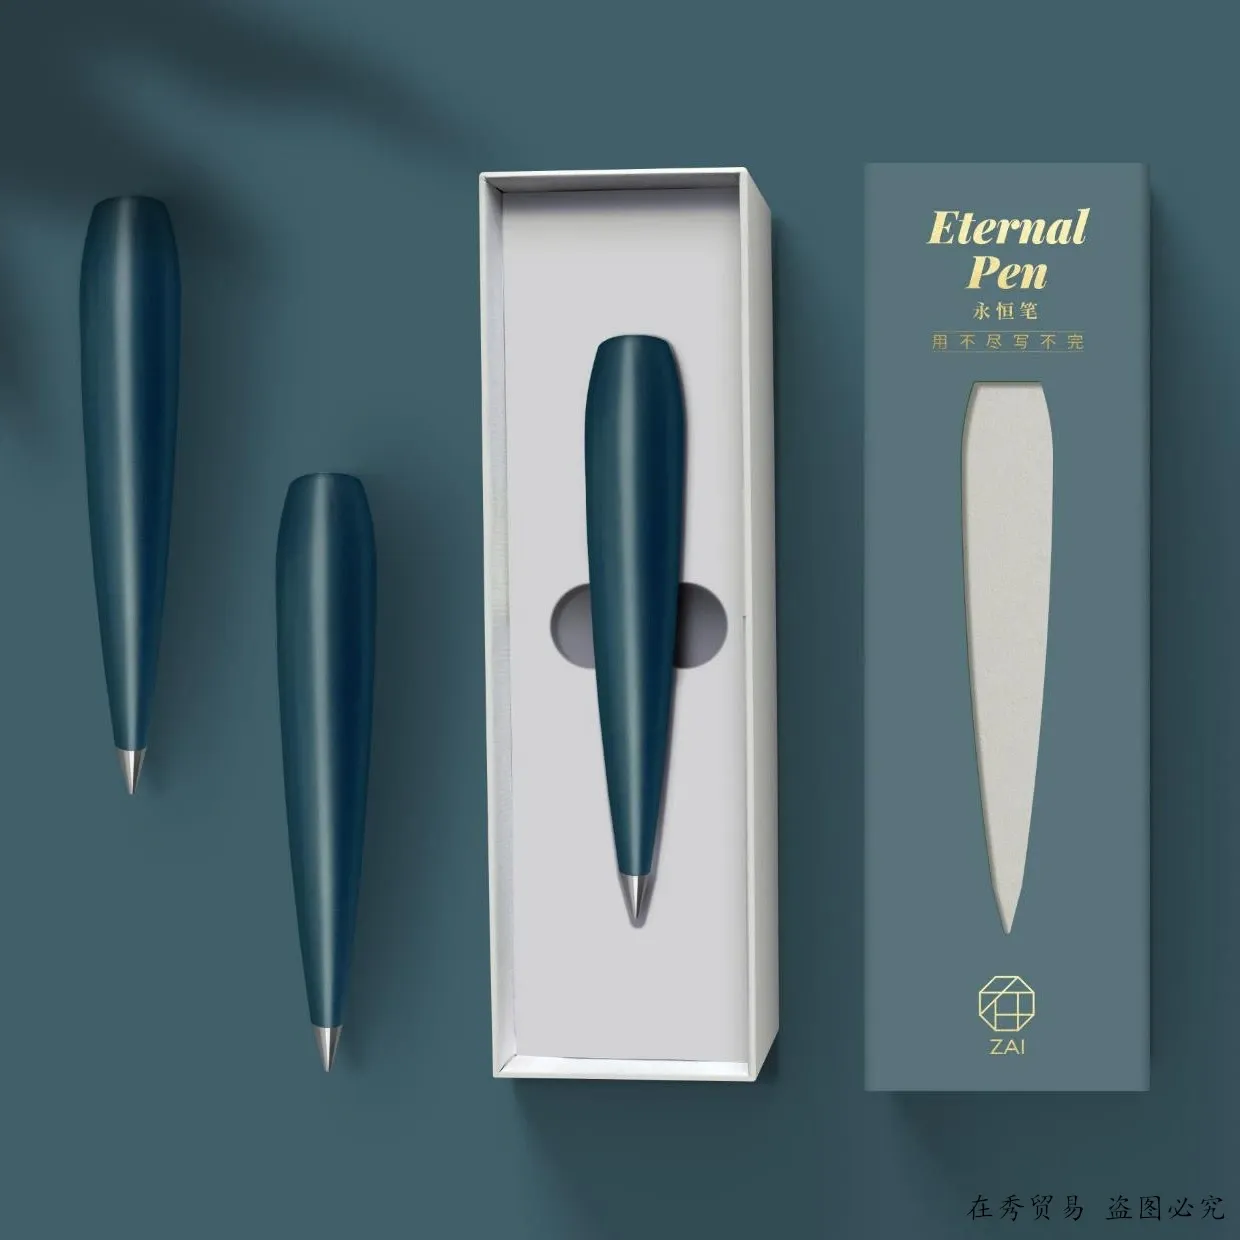 Pennor kreativa eviga för alltid oändliga blyertspenna Inget behov av bläckpenna